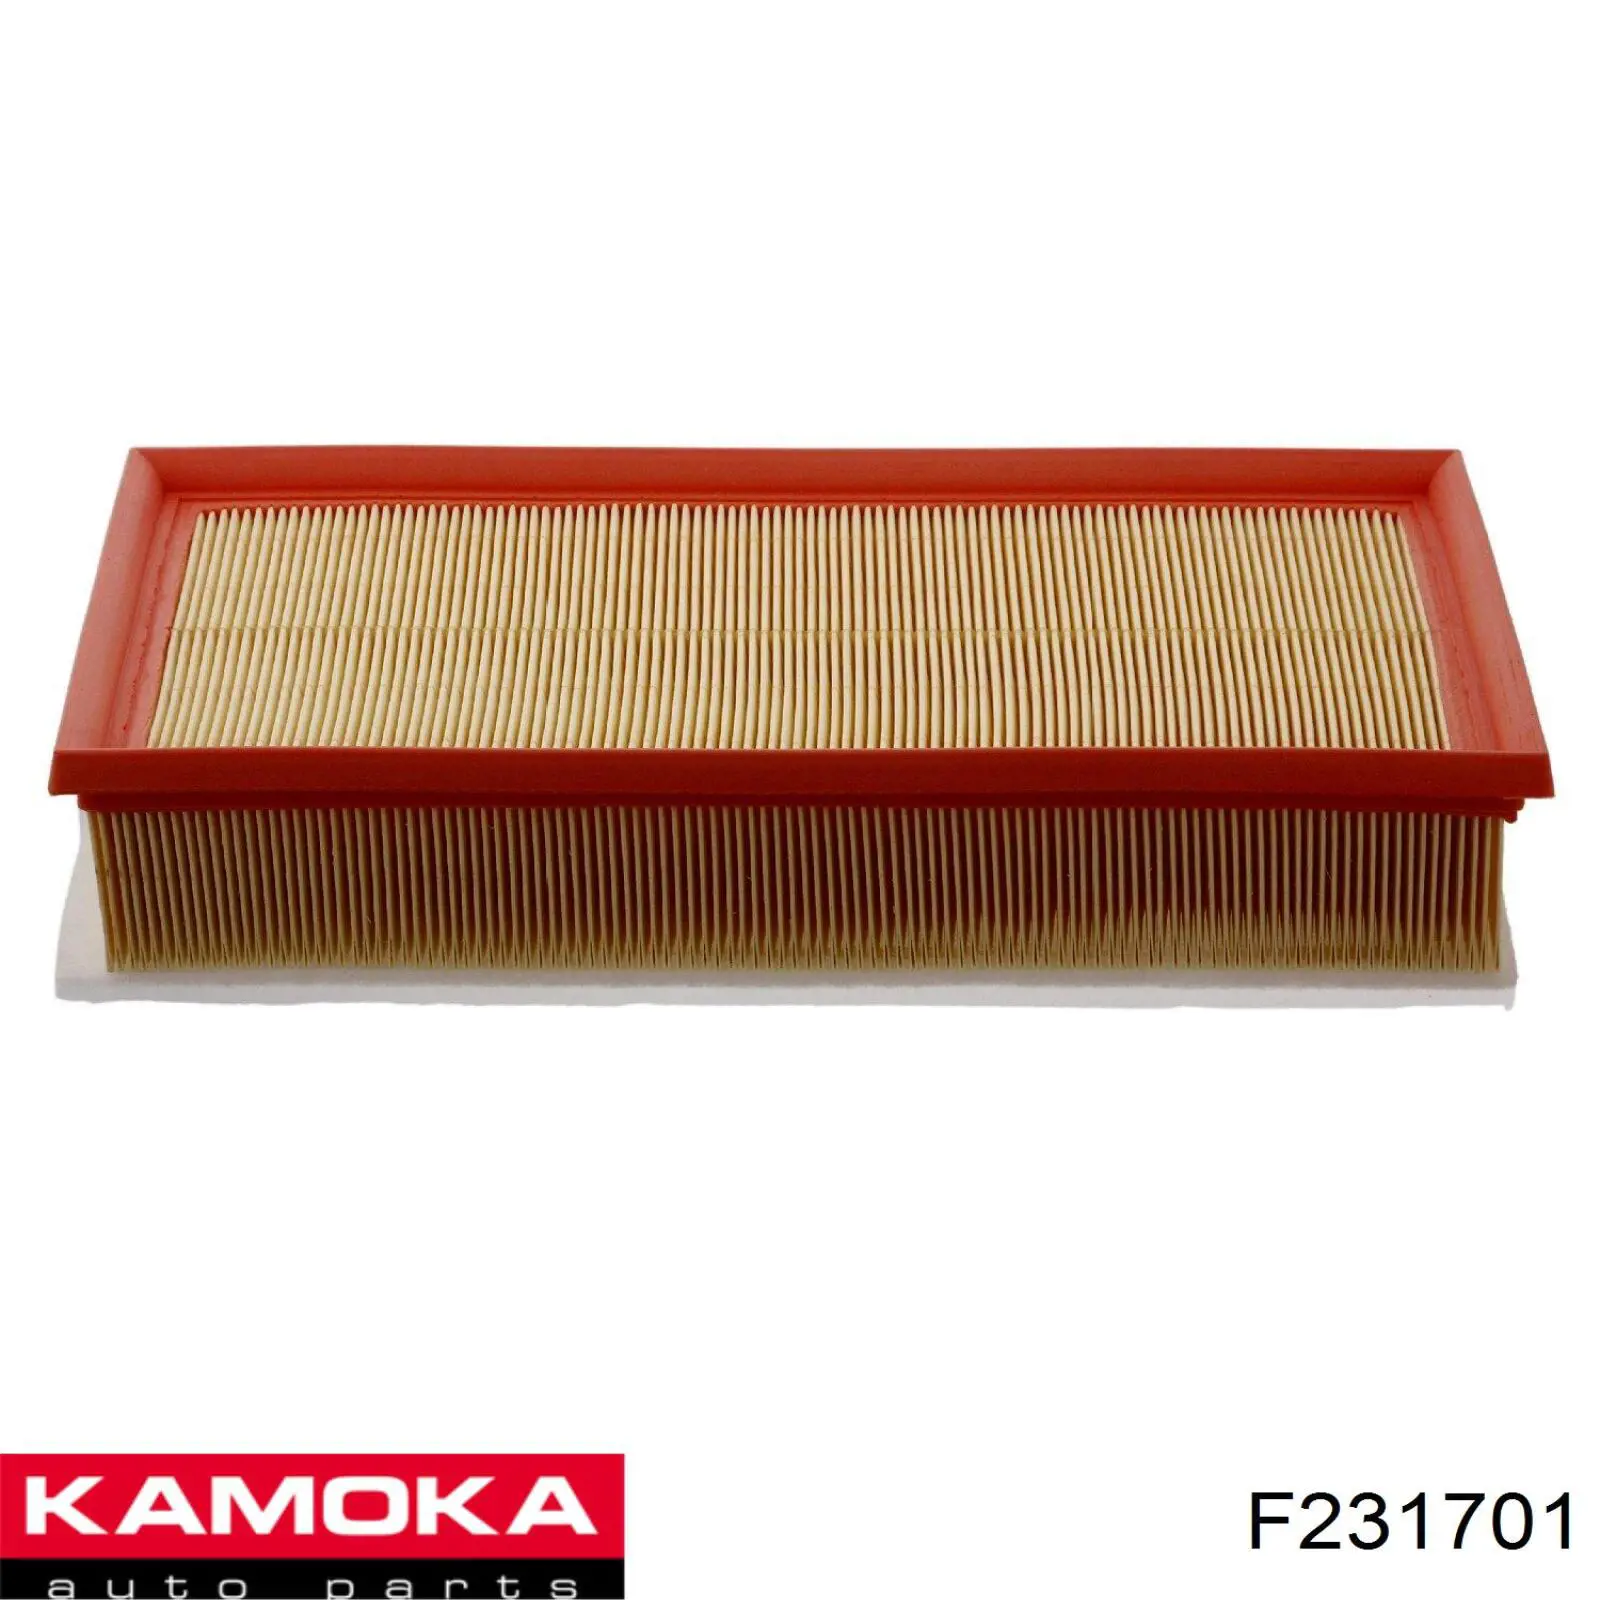 F231701 Kamoka filtro de aire